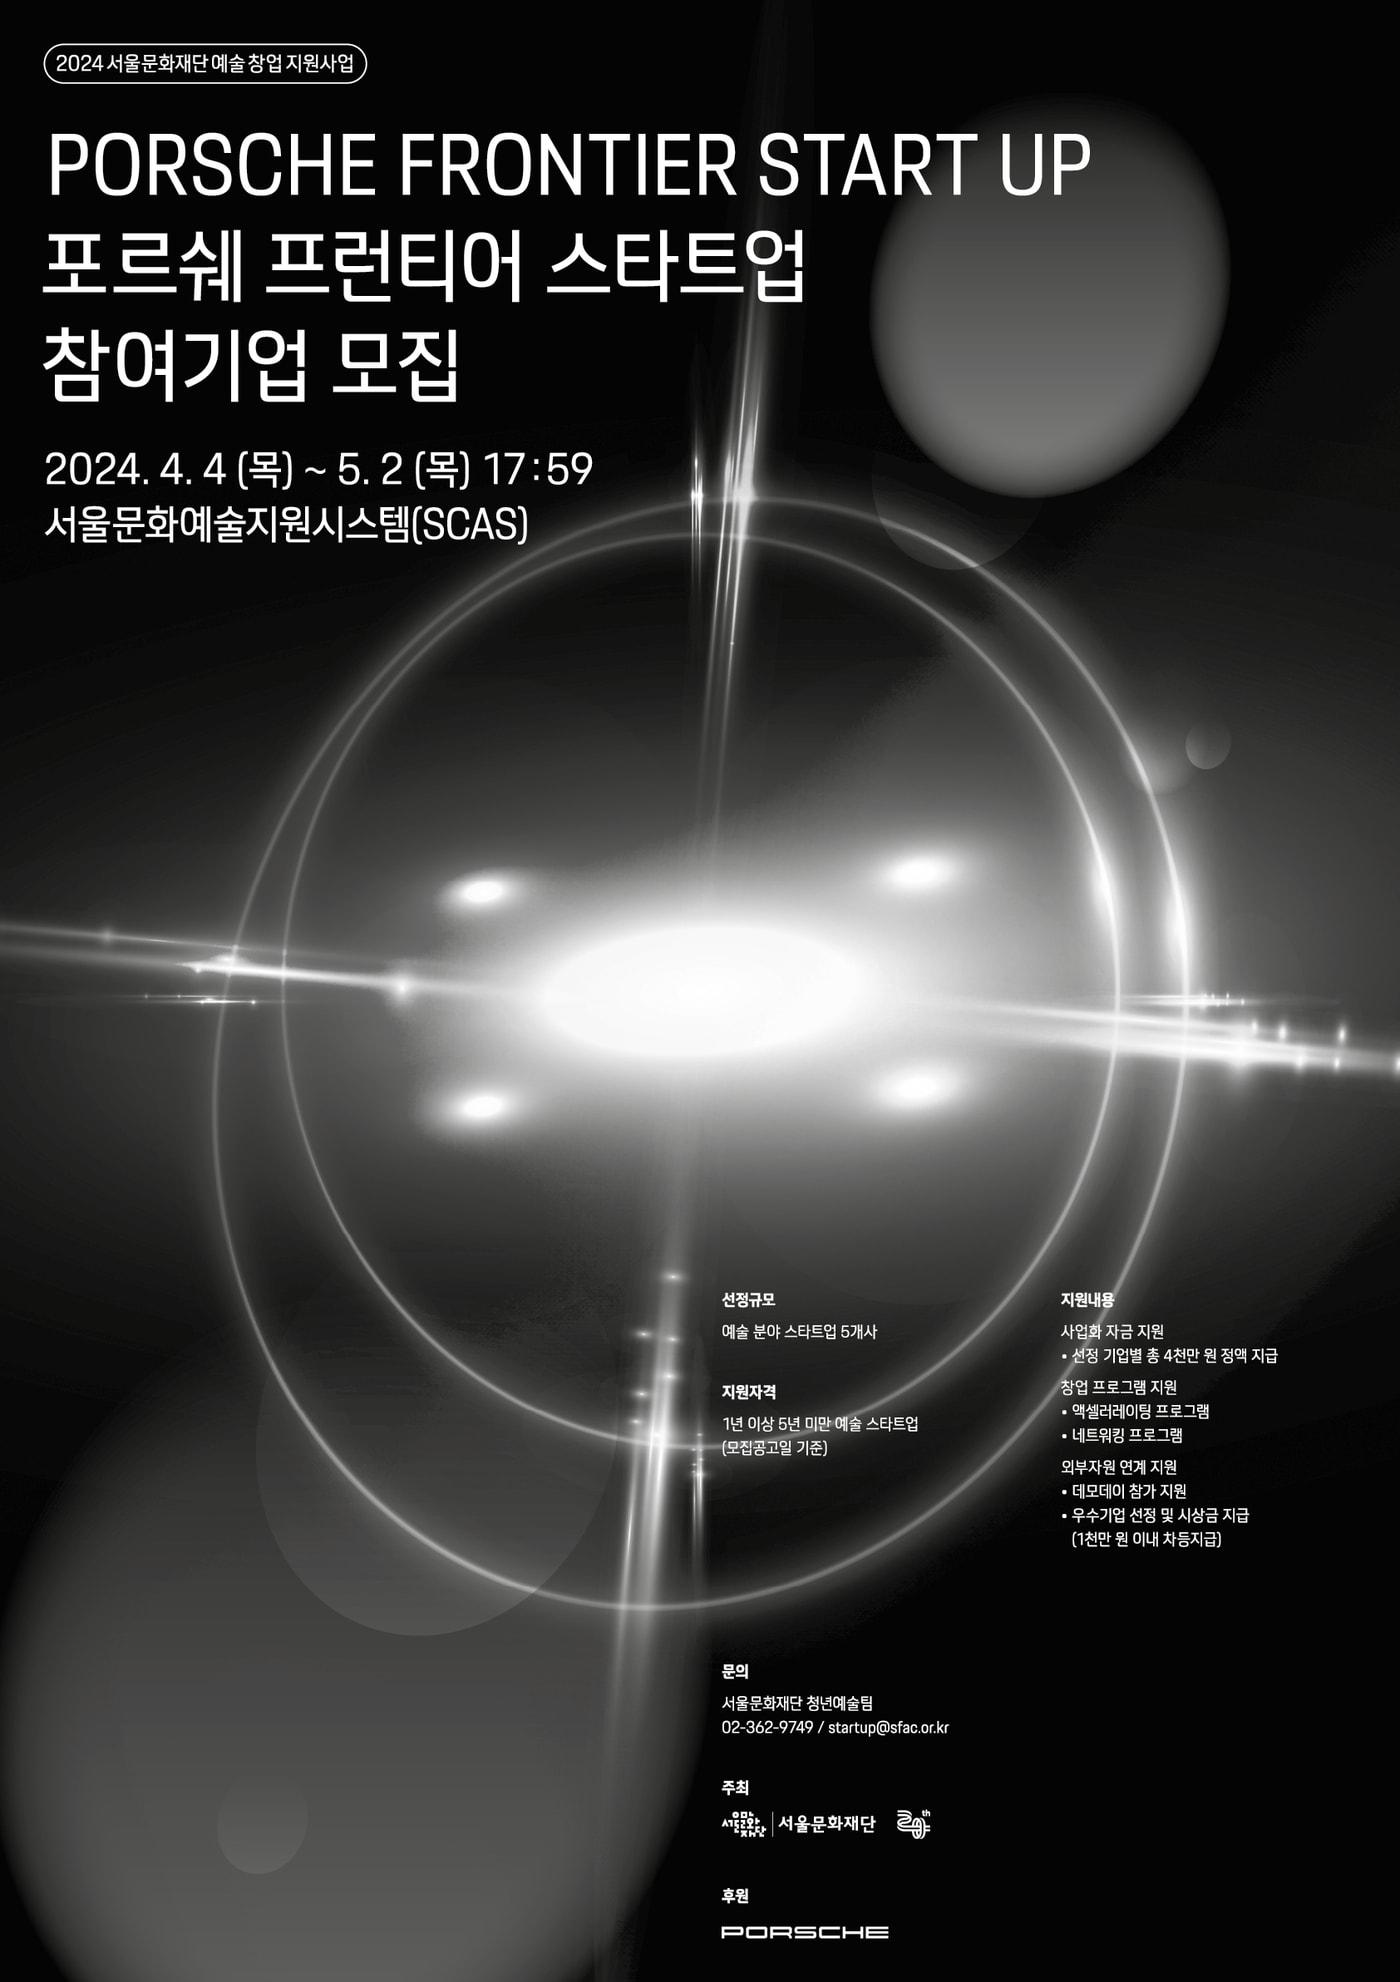 &#39;2024년 포르쉐 프런티어 스타트업&#39; 공모 포스터&#40;서울문화재단 제공&#41;